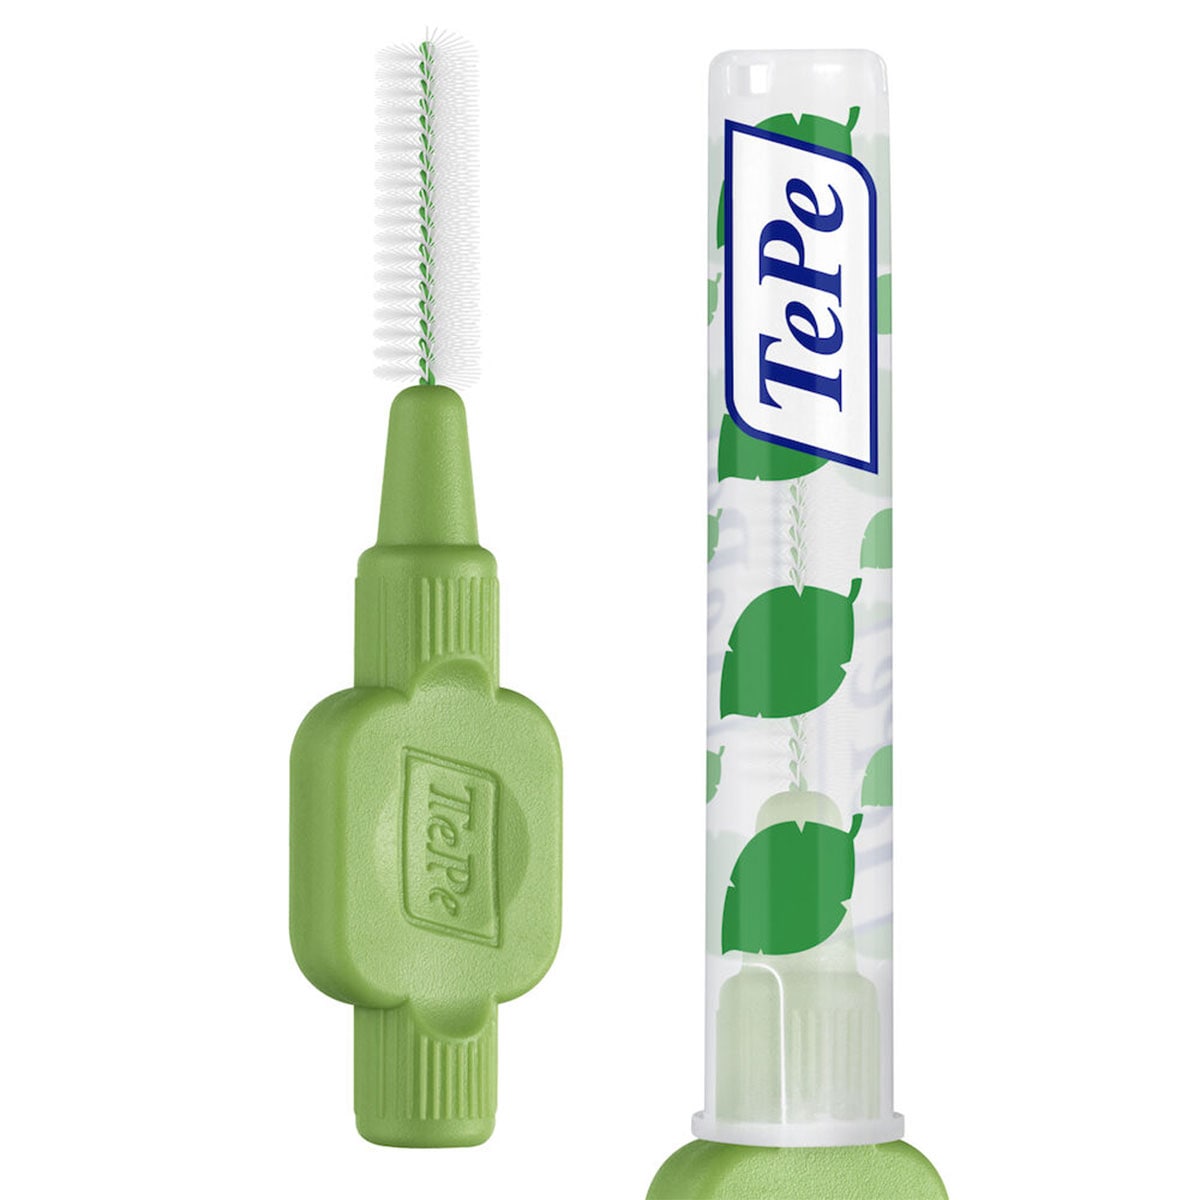 TePe Interdental Brush 0.8mm Green 6 Pack